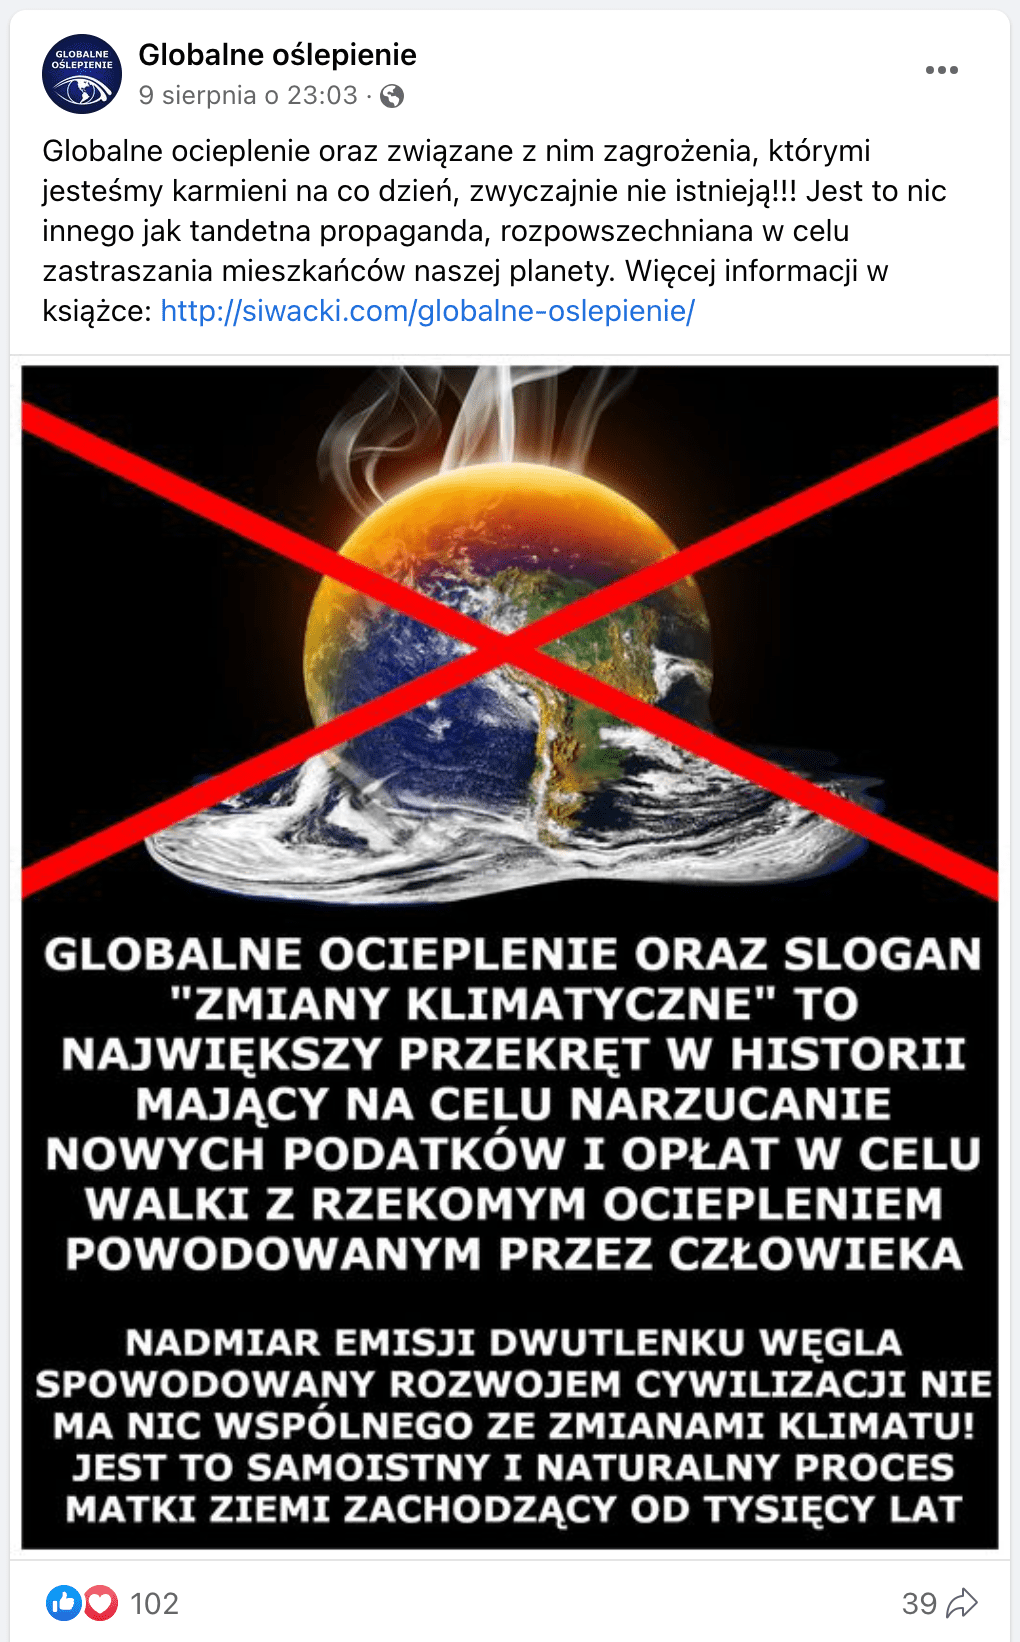 Zrzut ekranu posta na Facebooku. Dołączono do niego ilustrację, na której widzimy przekreśloną grafikę rozpływającej się z gorąca planety.